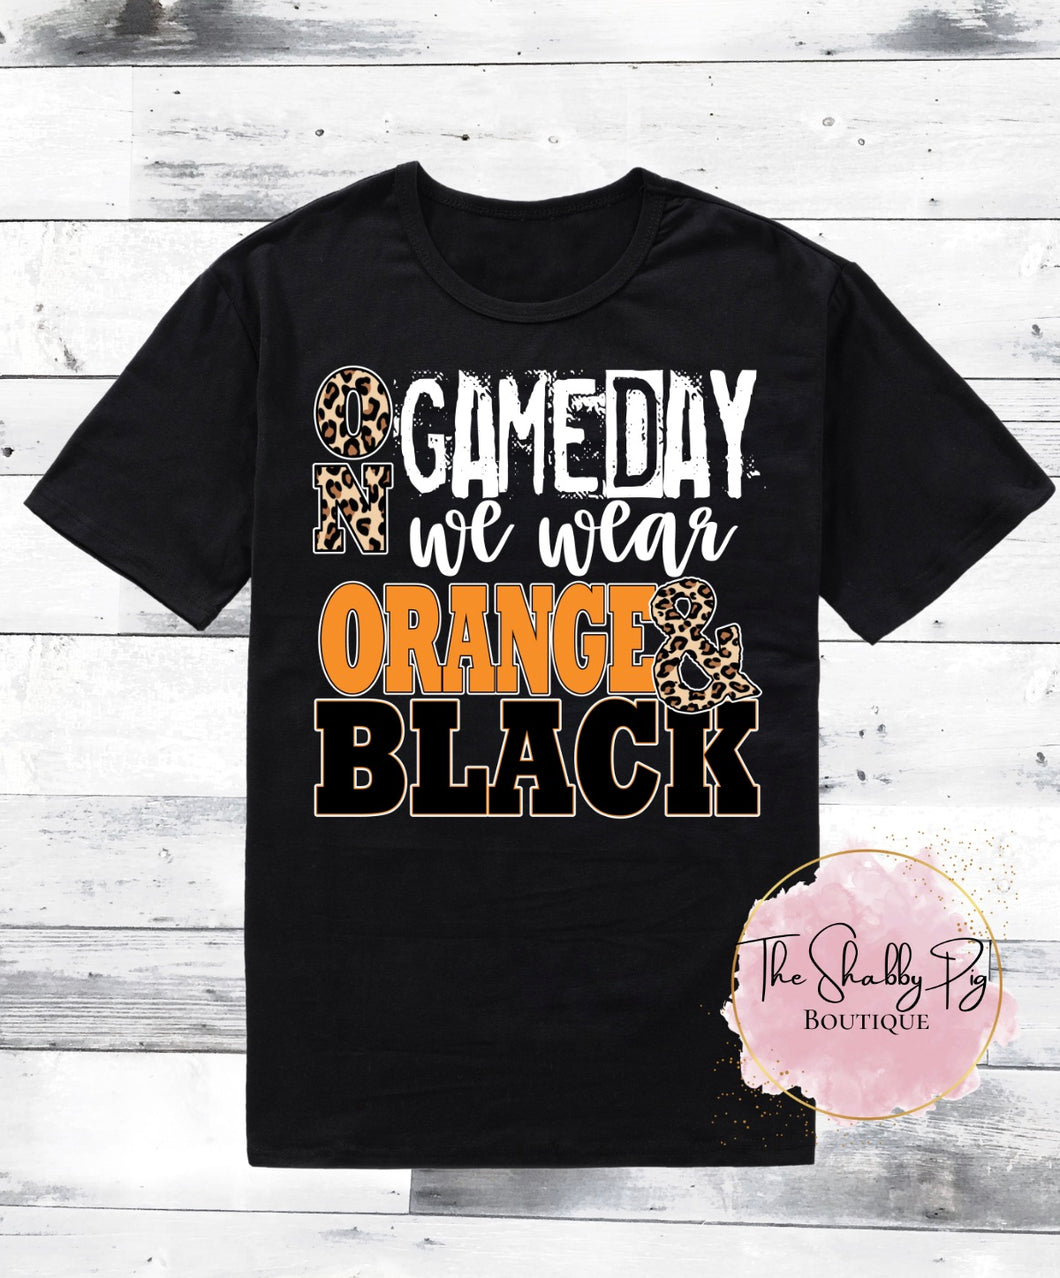 On Game Day we wear Orange & Black Shirt